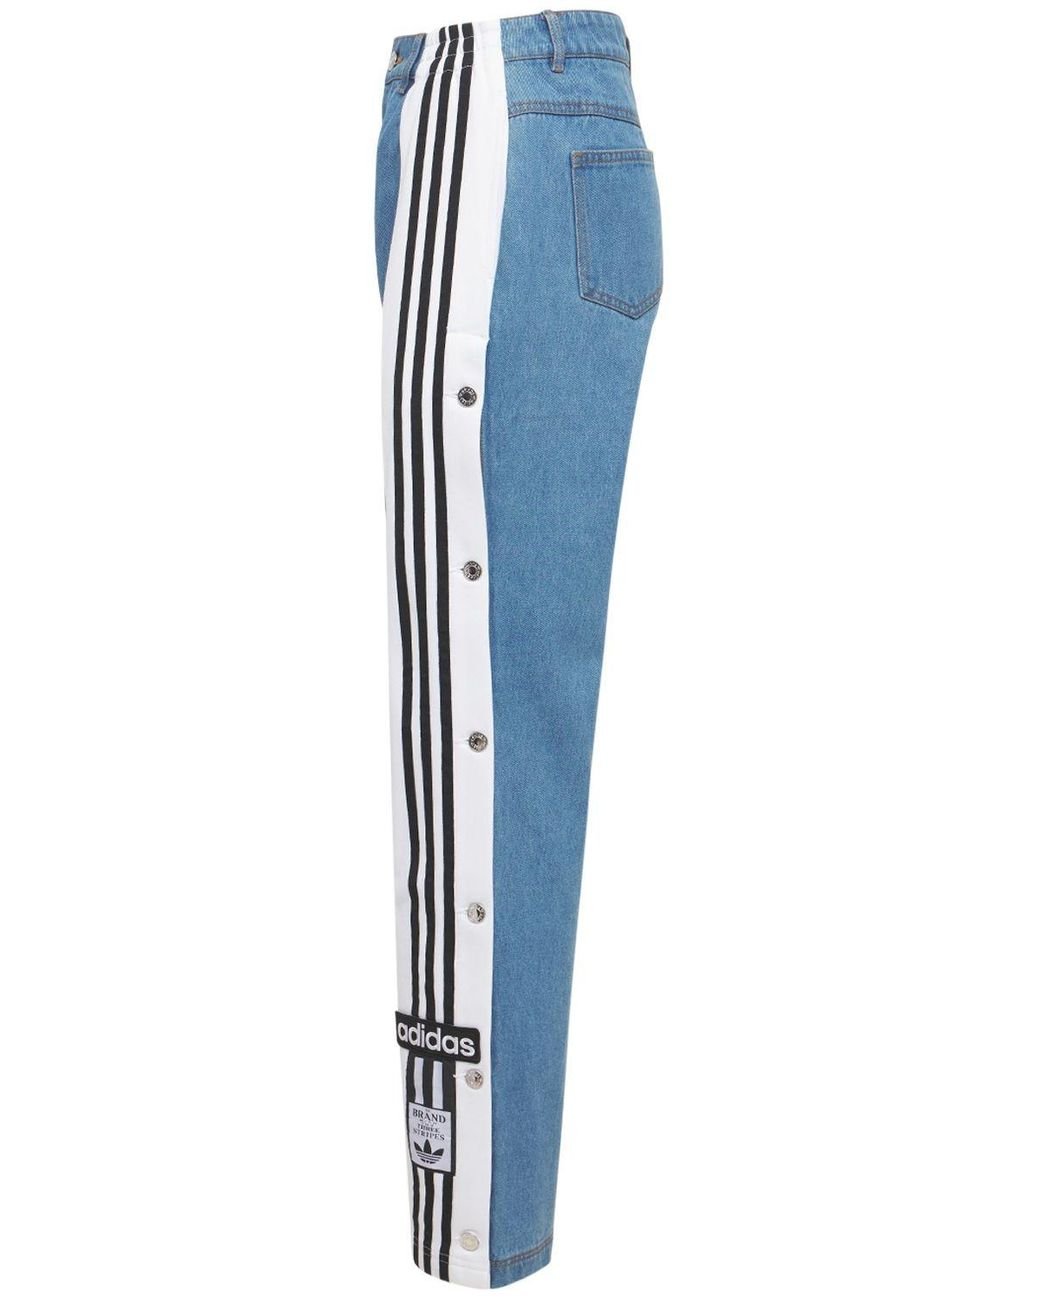 adidas Originals Denim Adibreak Pants in Blue | Lyst